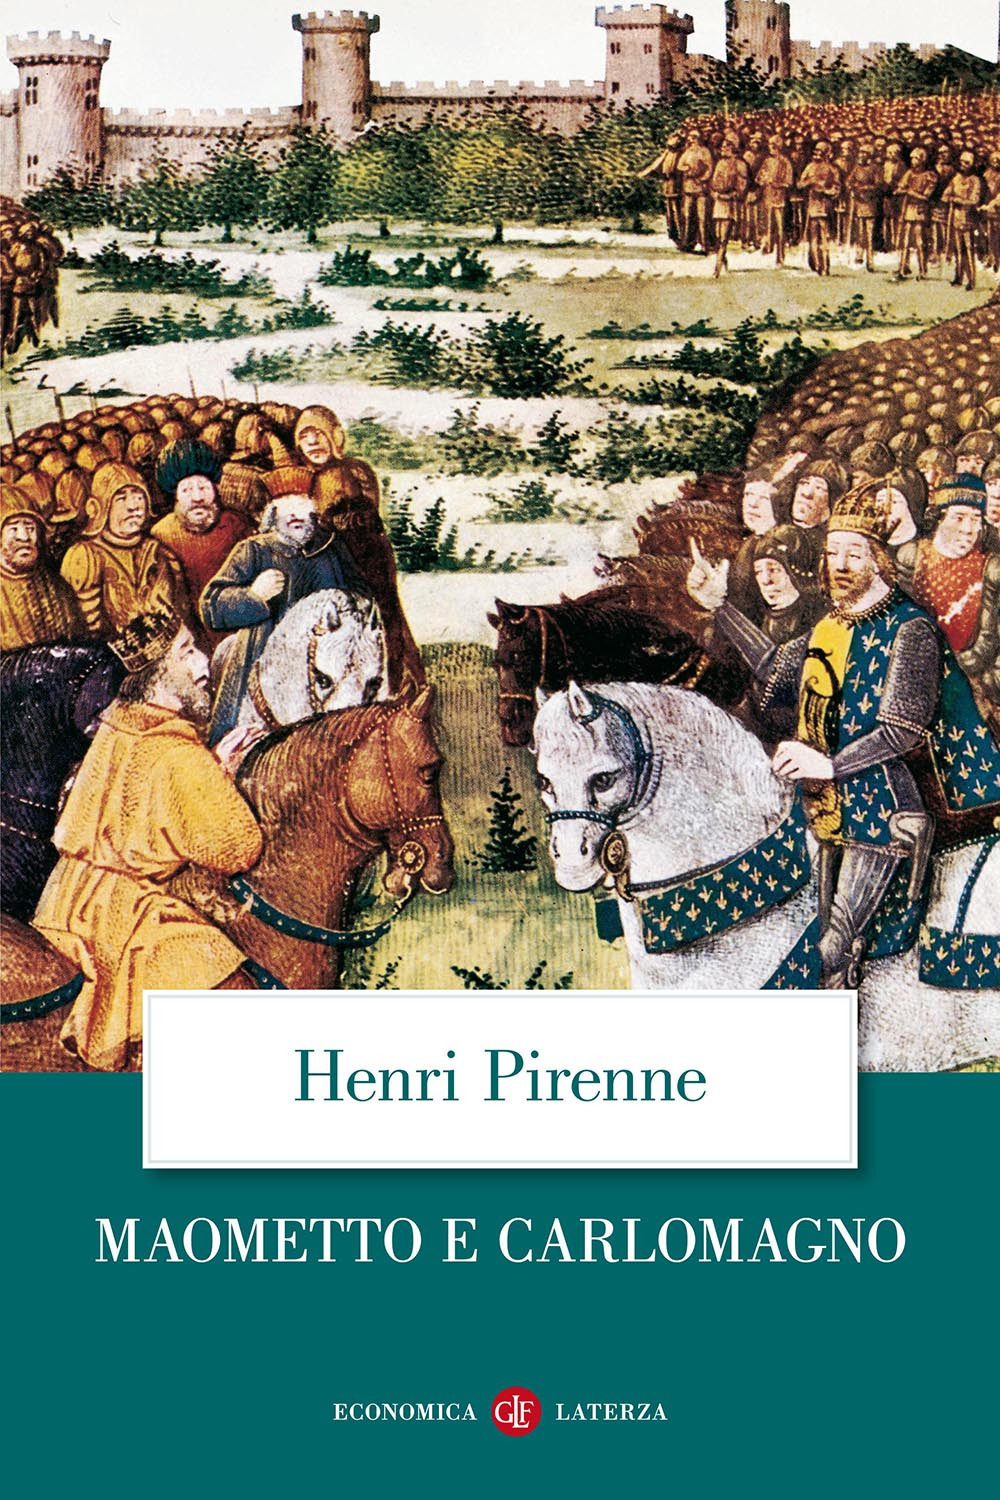 Image of Maometto e Carlomagno